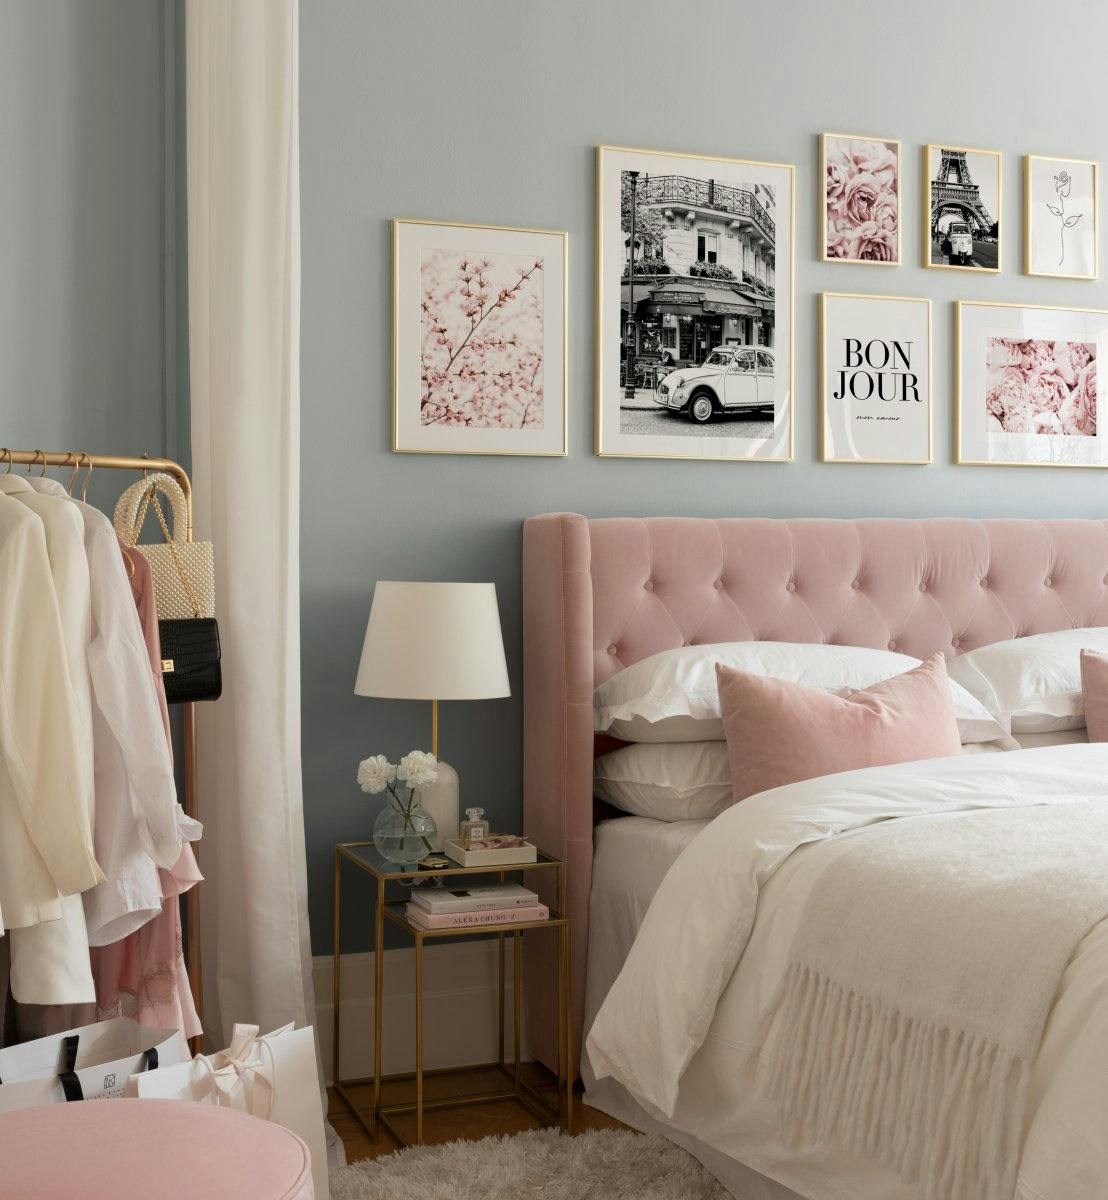 Monokrome og lyserøde plakater til soveværelset